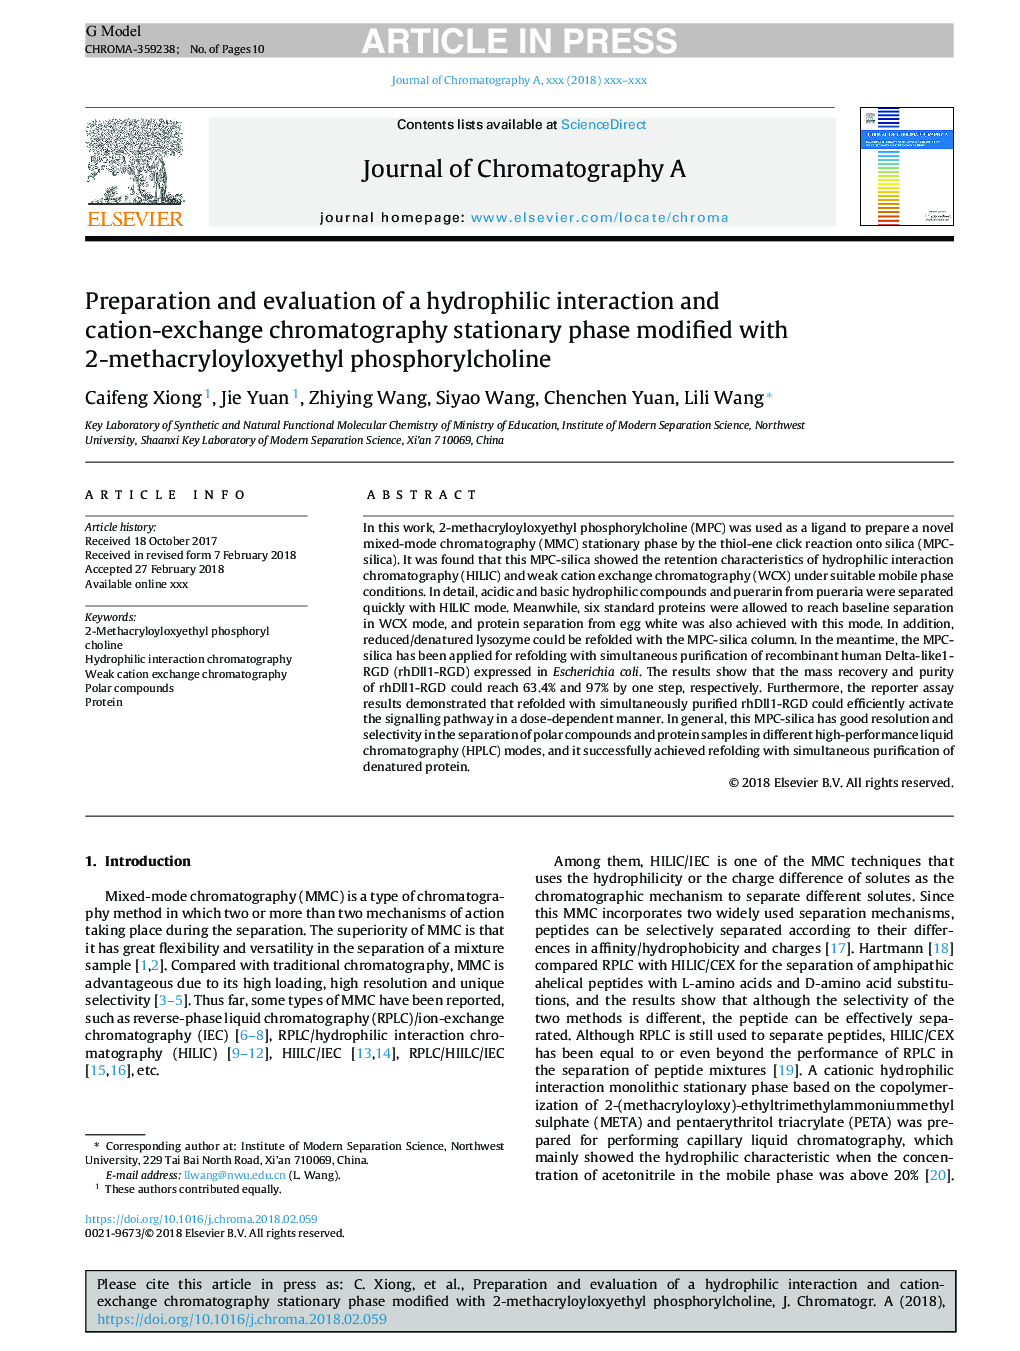 آماده سازی و ارزیابی یک تعامل هیدرولیکی و فاز ثابت کروماتوگرافی کاتیون مبادله اصلاح شده با 2-متاکریلویکسی اتیل فسفریکل کولین 